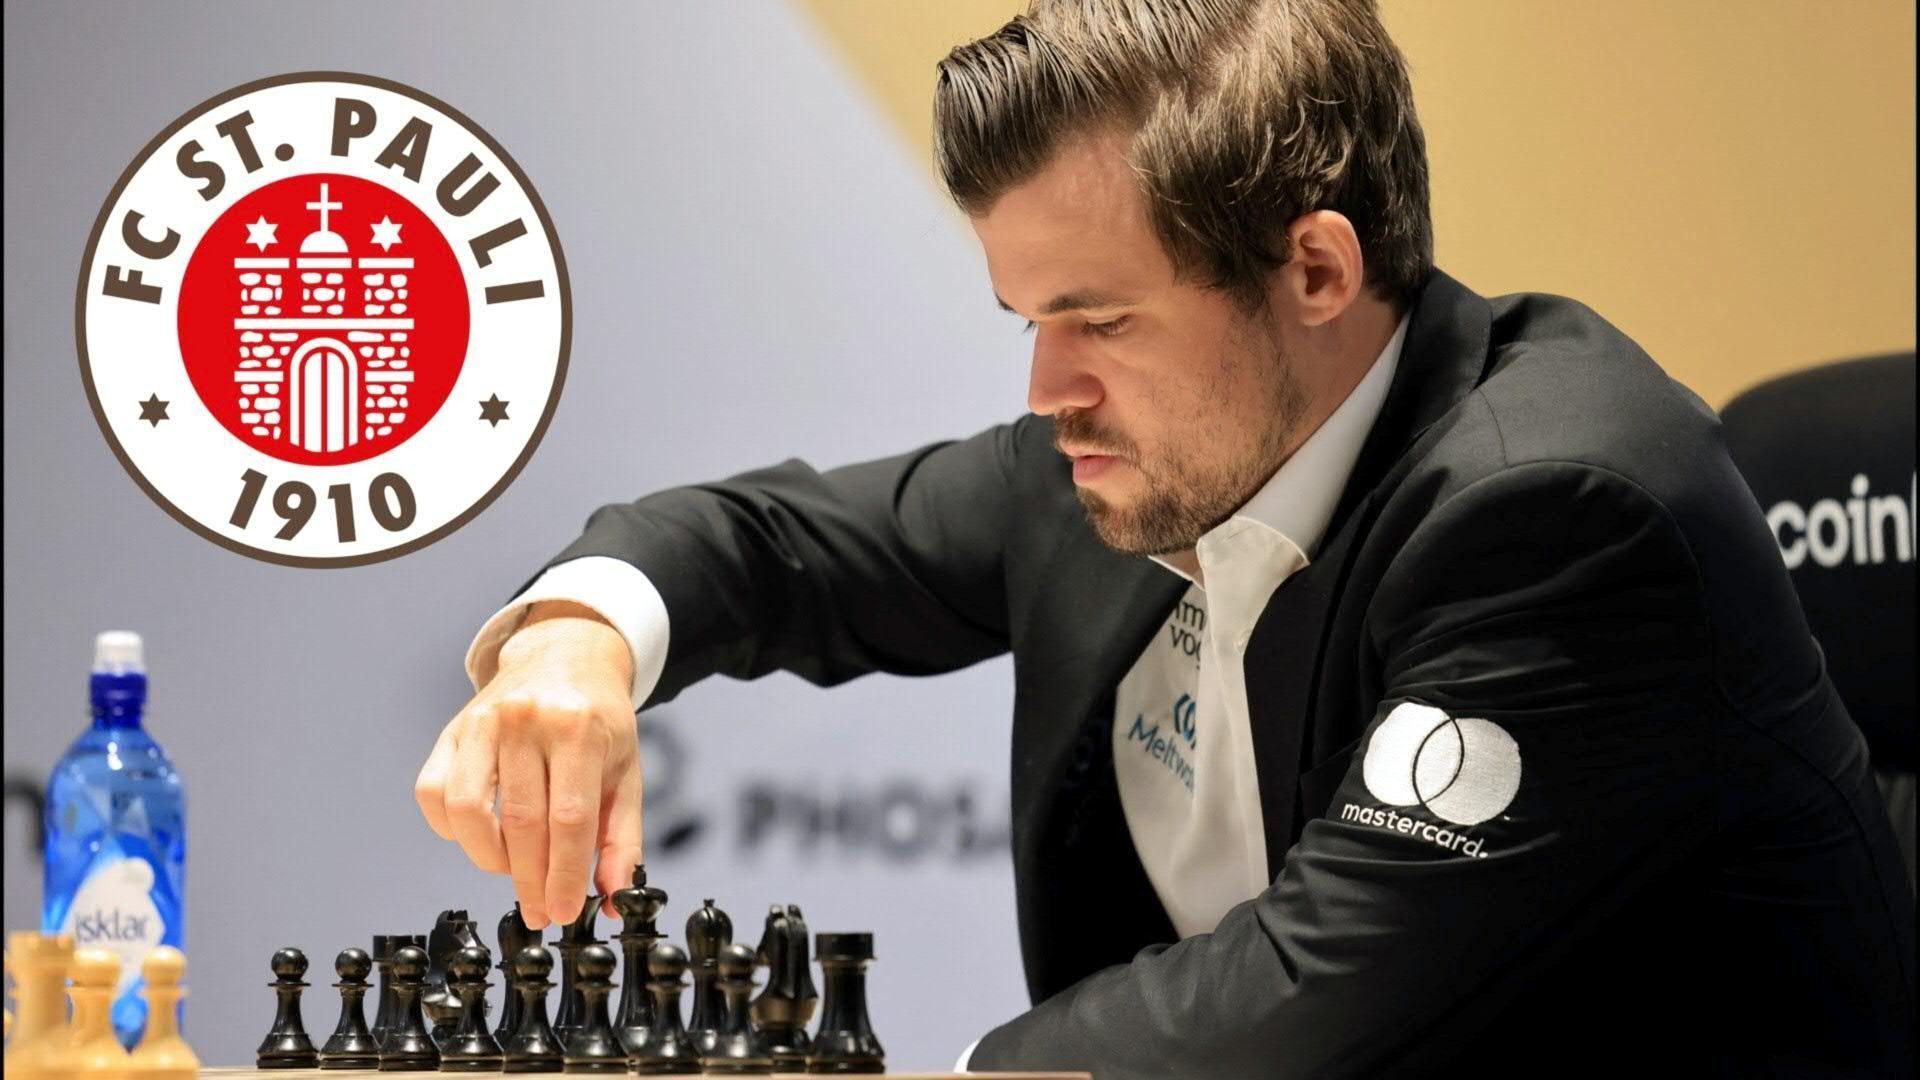 Schach-Superstar Carlsen wechselt zu St. Pauli